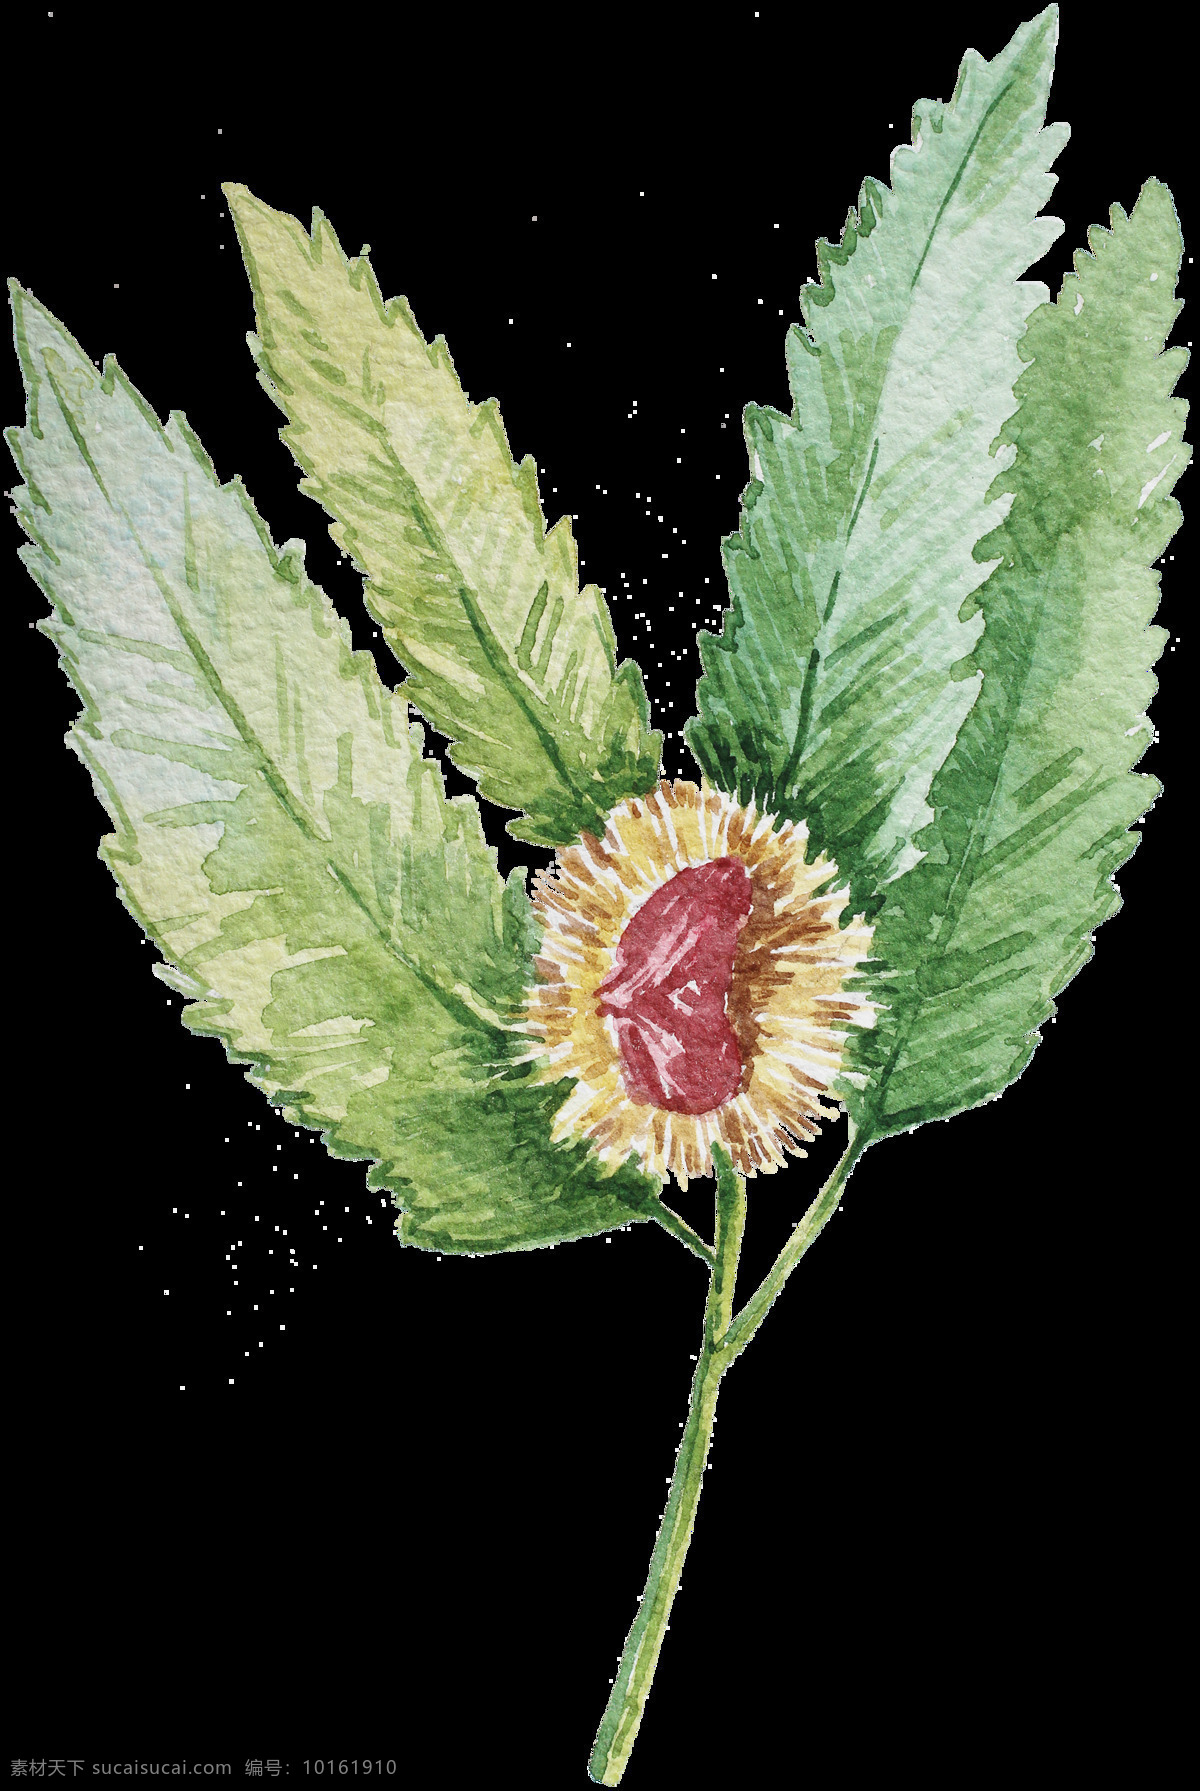 手绘植物 水彩植物 水彩花卉 彩色植物 卡通植物 清新植物 可爱植物 水彩风 清新 插图